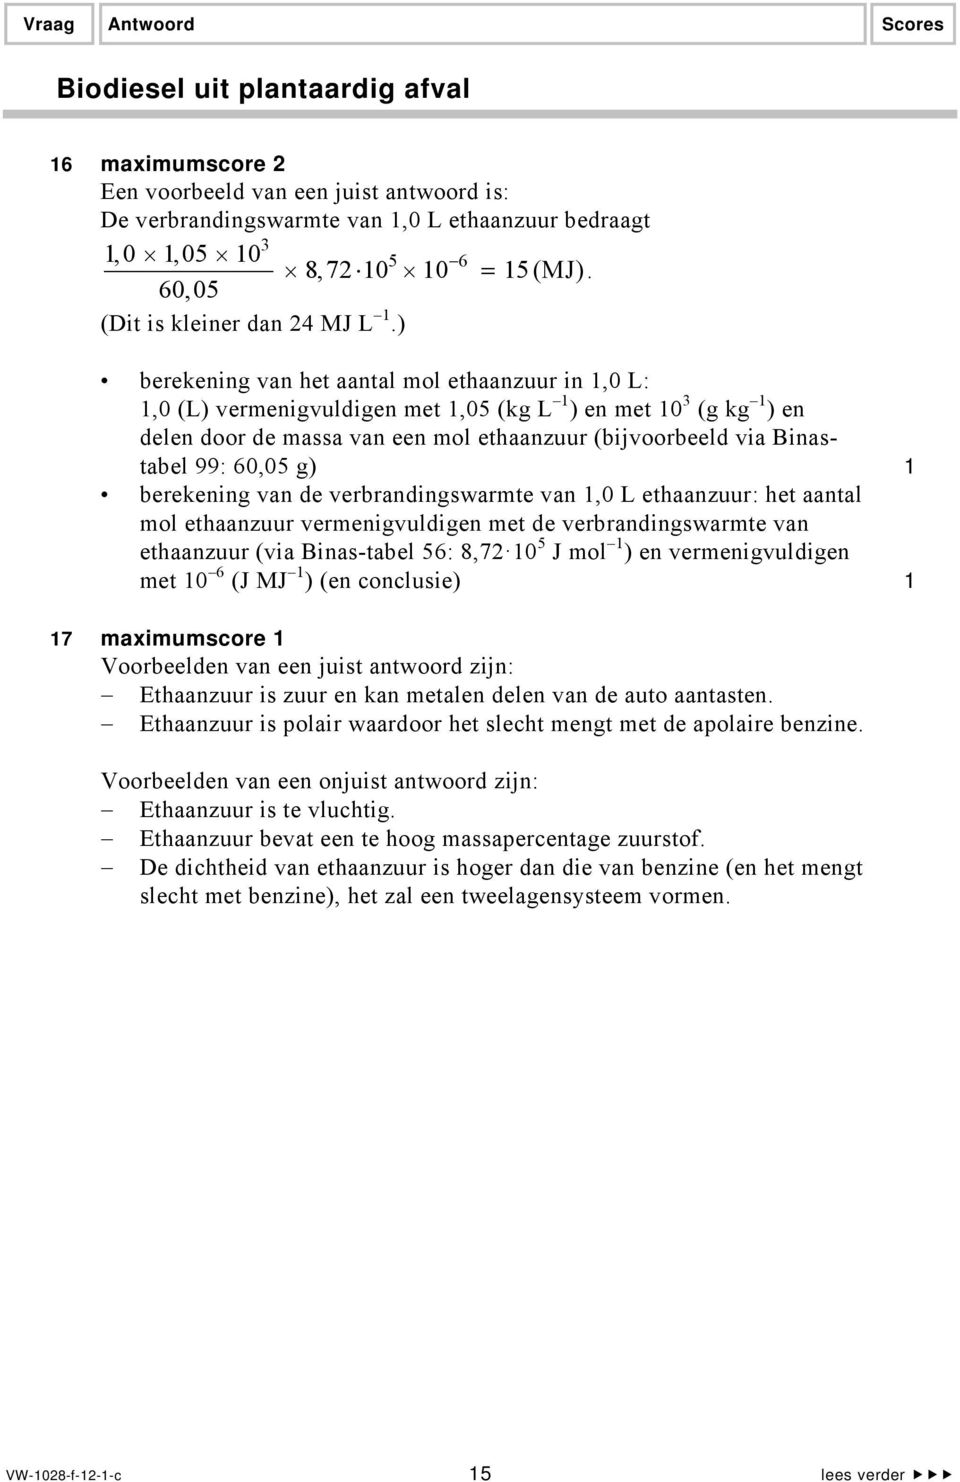 60,05 g) 1 berekening van de verbrandingswarmte van 1,0 L ethaanzuur: het aantal mol ethaanzuur vermenigvuldigen met de verbrandingswarmte van ethaanzuur (via Binas-tabel 56: 8,72 10 5 J mol 1 ) en